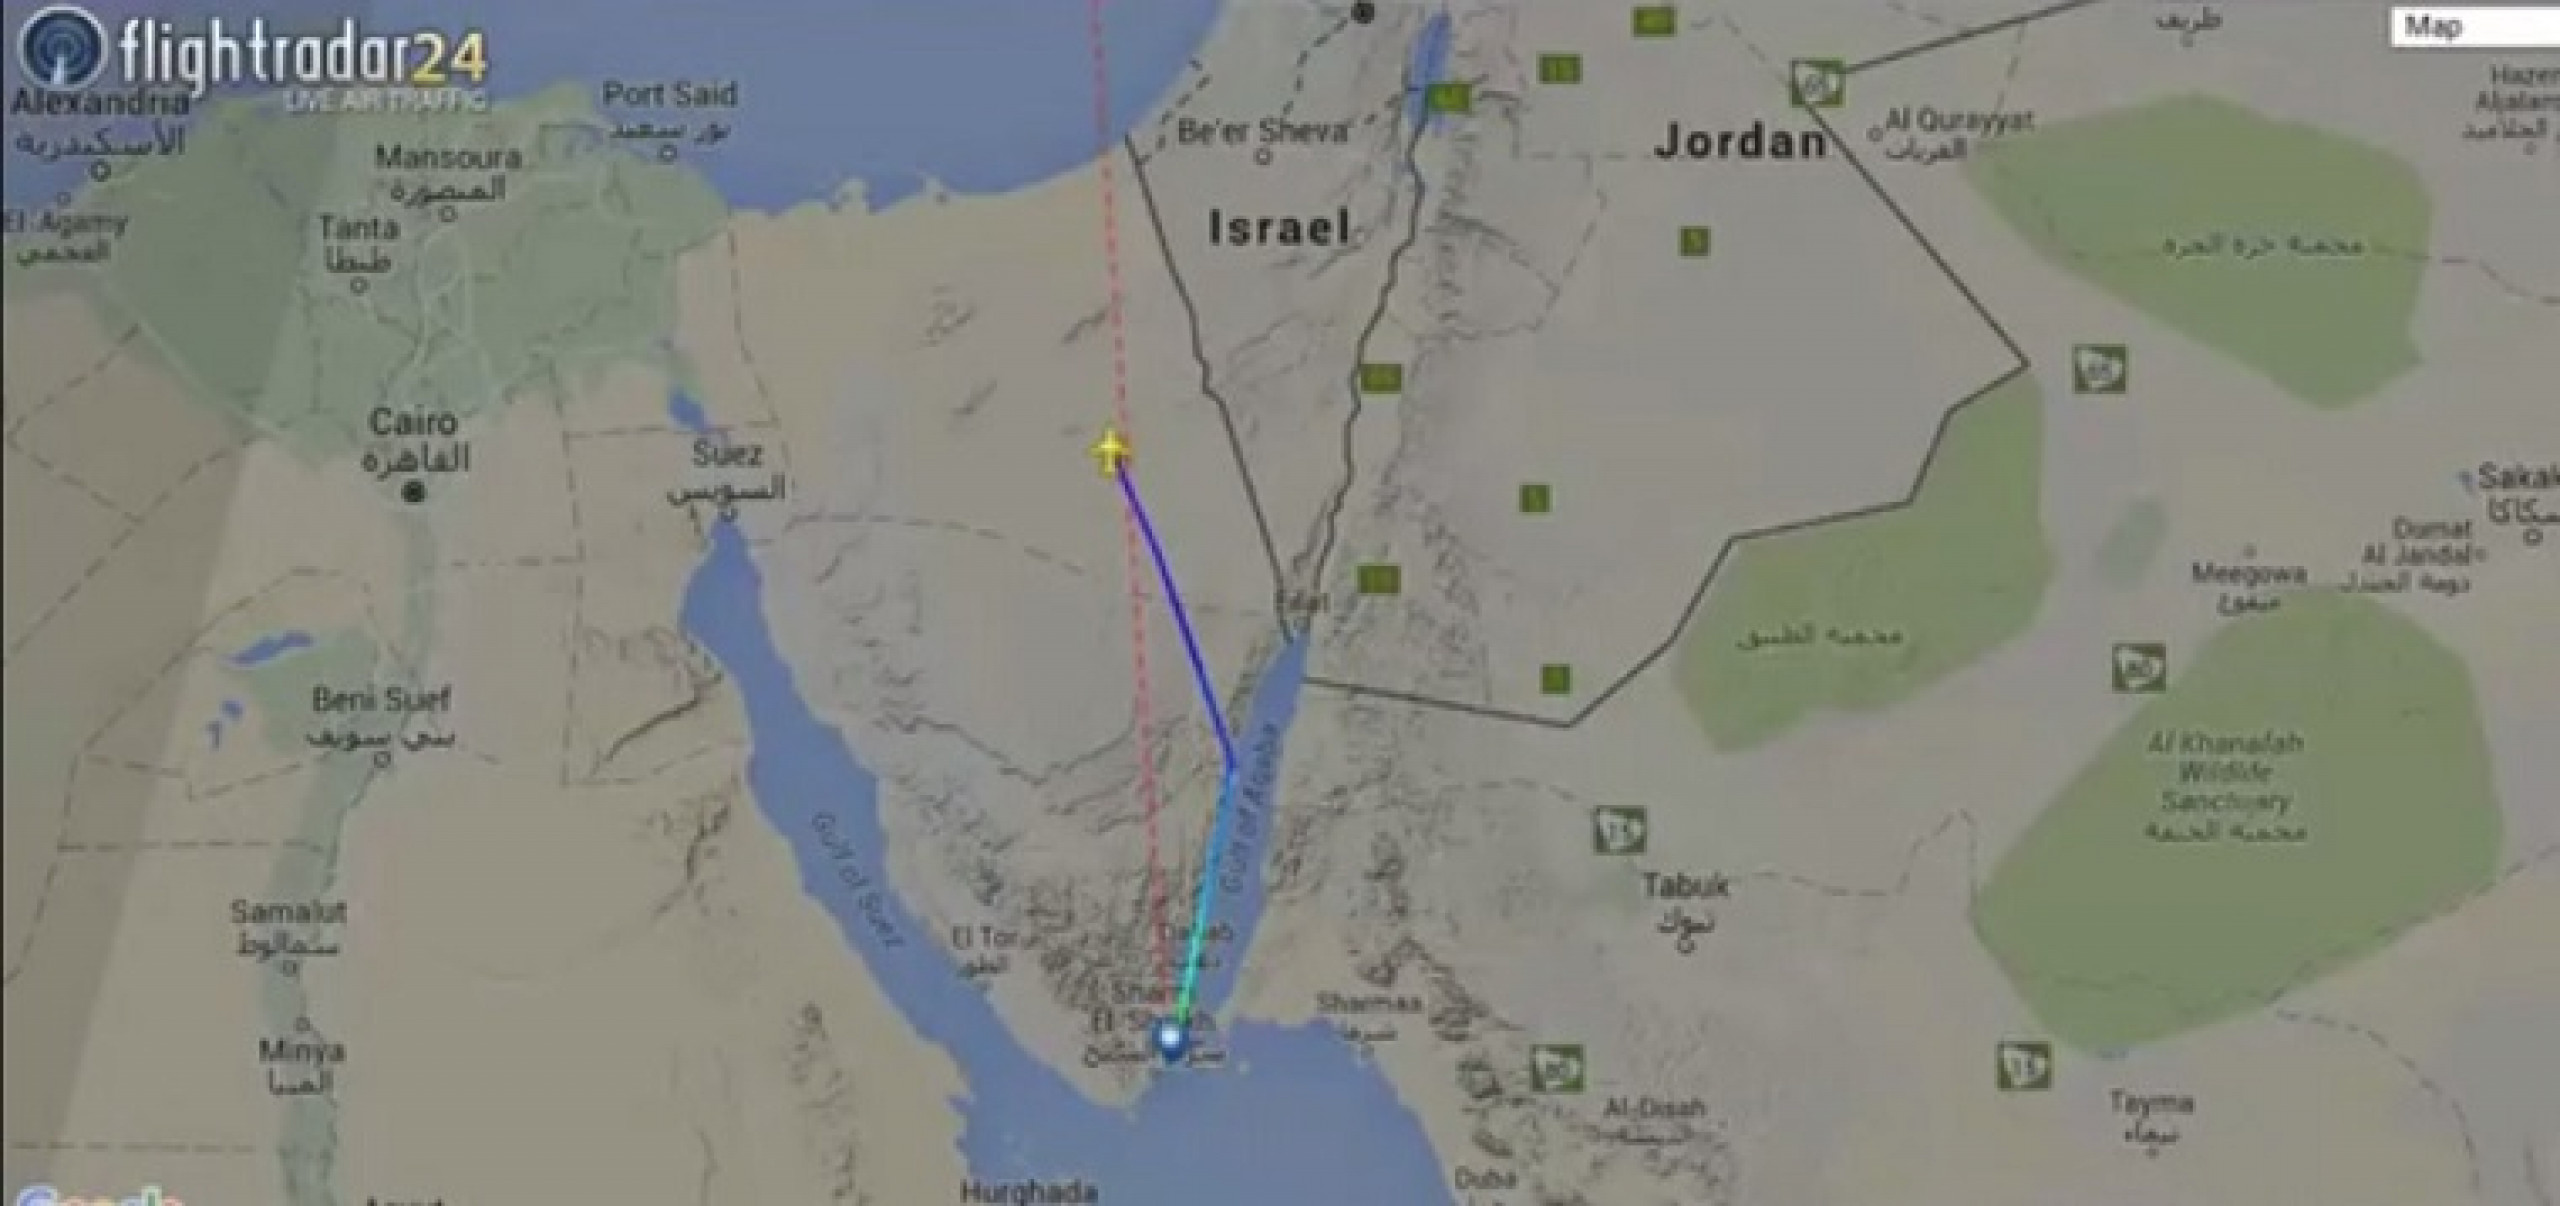 Самолеты россия летают в египет. Синайский полуостров шарма Шейх карта. Место крушения а321 Синайский полуостров. Место крушения самолёта а321 на карте. Карта Египта и Иордании.